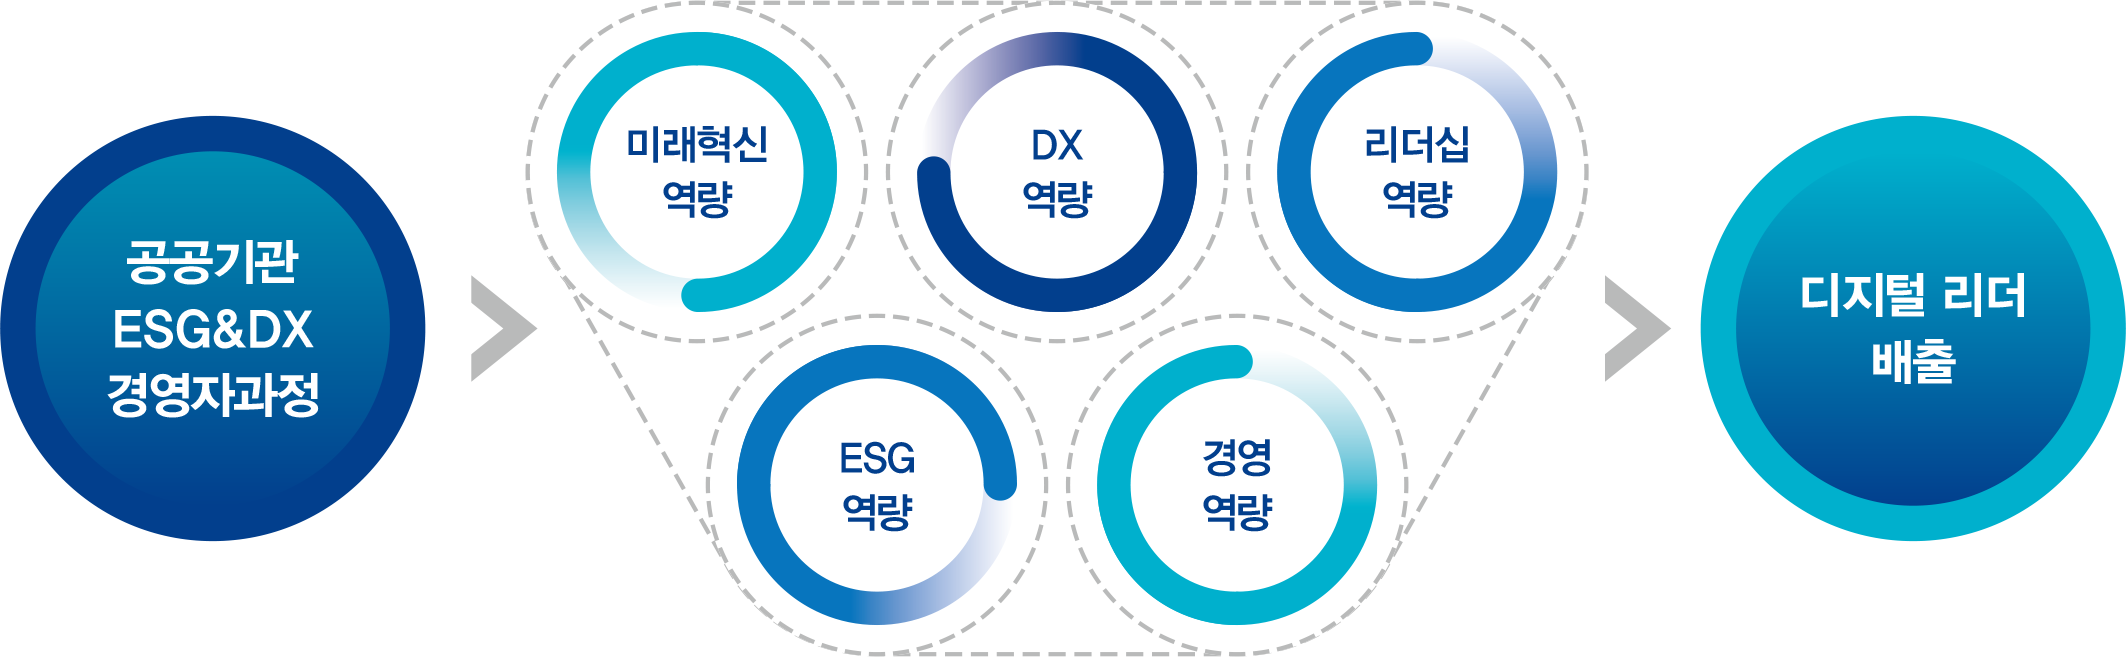 공공기관 ESG&DX경영자과정 소개 도식